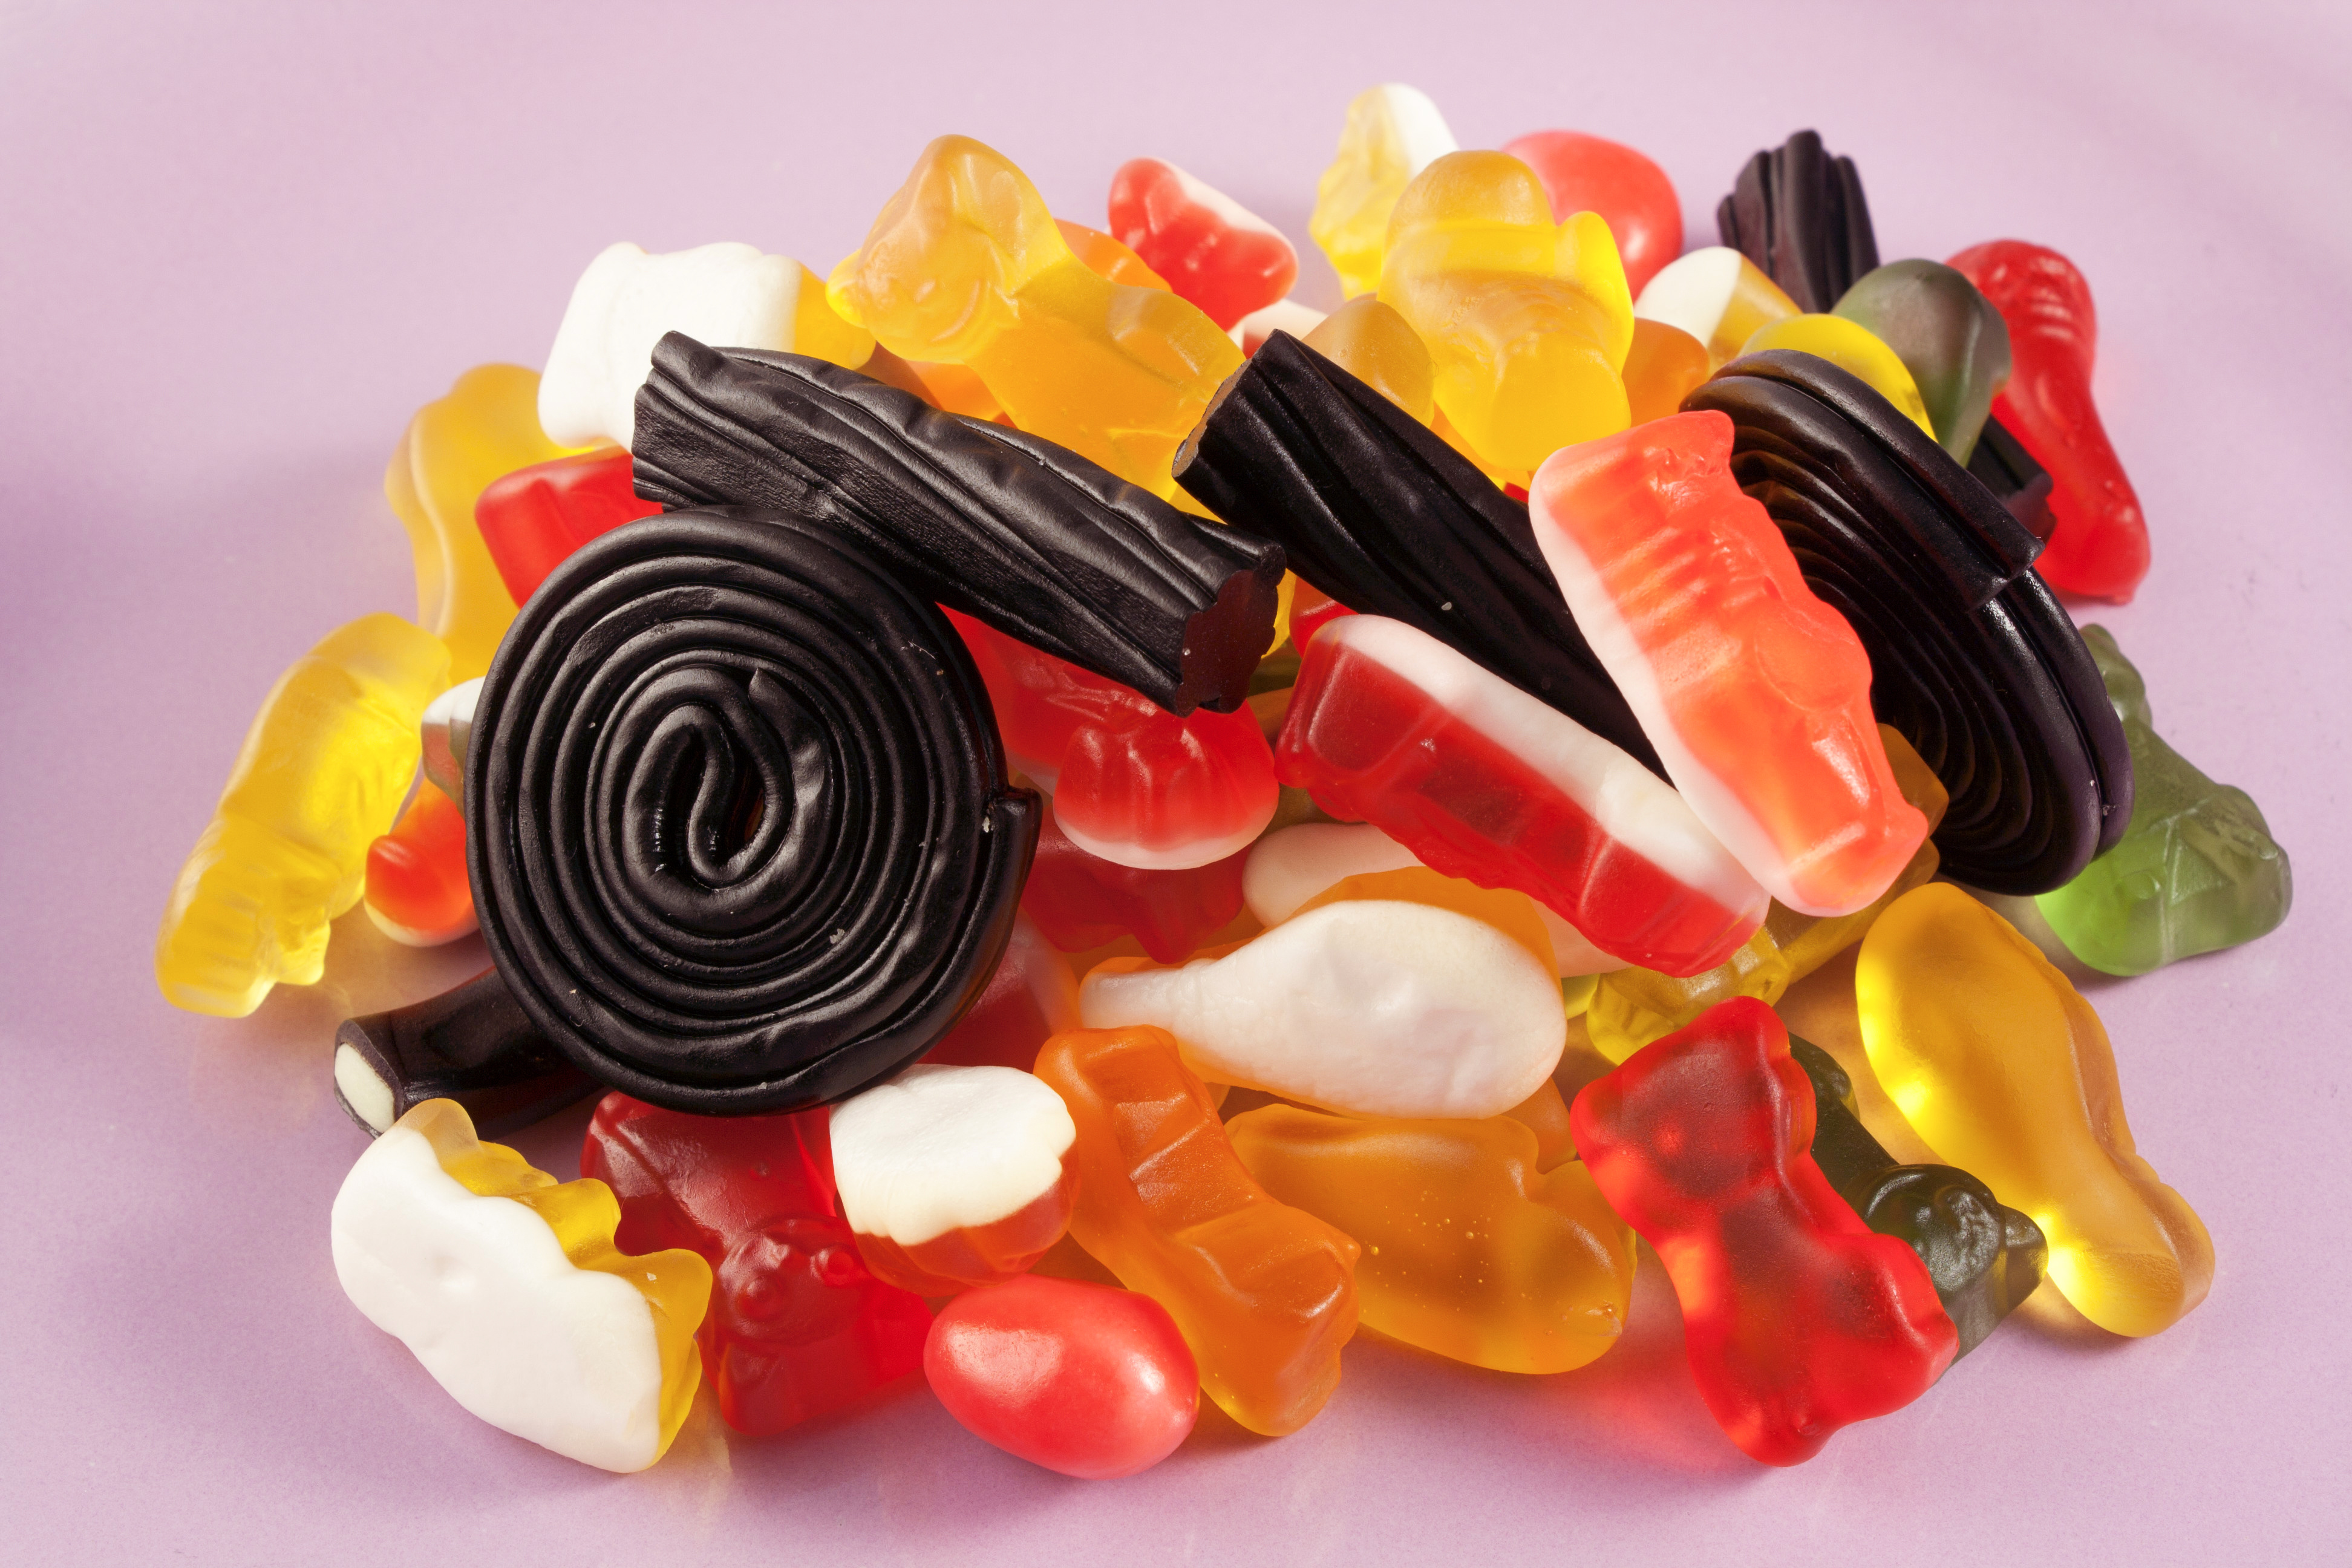 Skumgodteri, gelegodteri og lakris inneholder mindre mettet fett enn for eksempel sjokolade, men inneholder likevel mye sukker. Bilde: AdobeStock